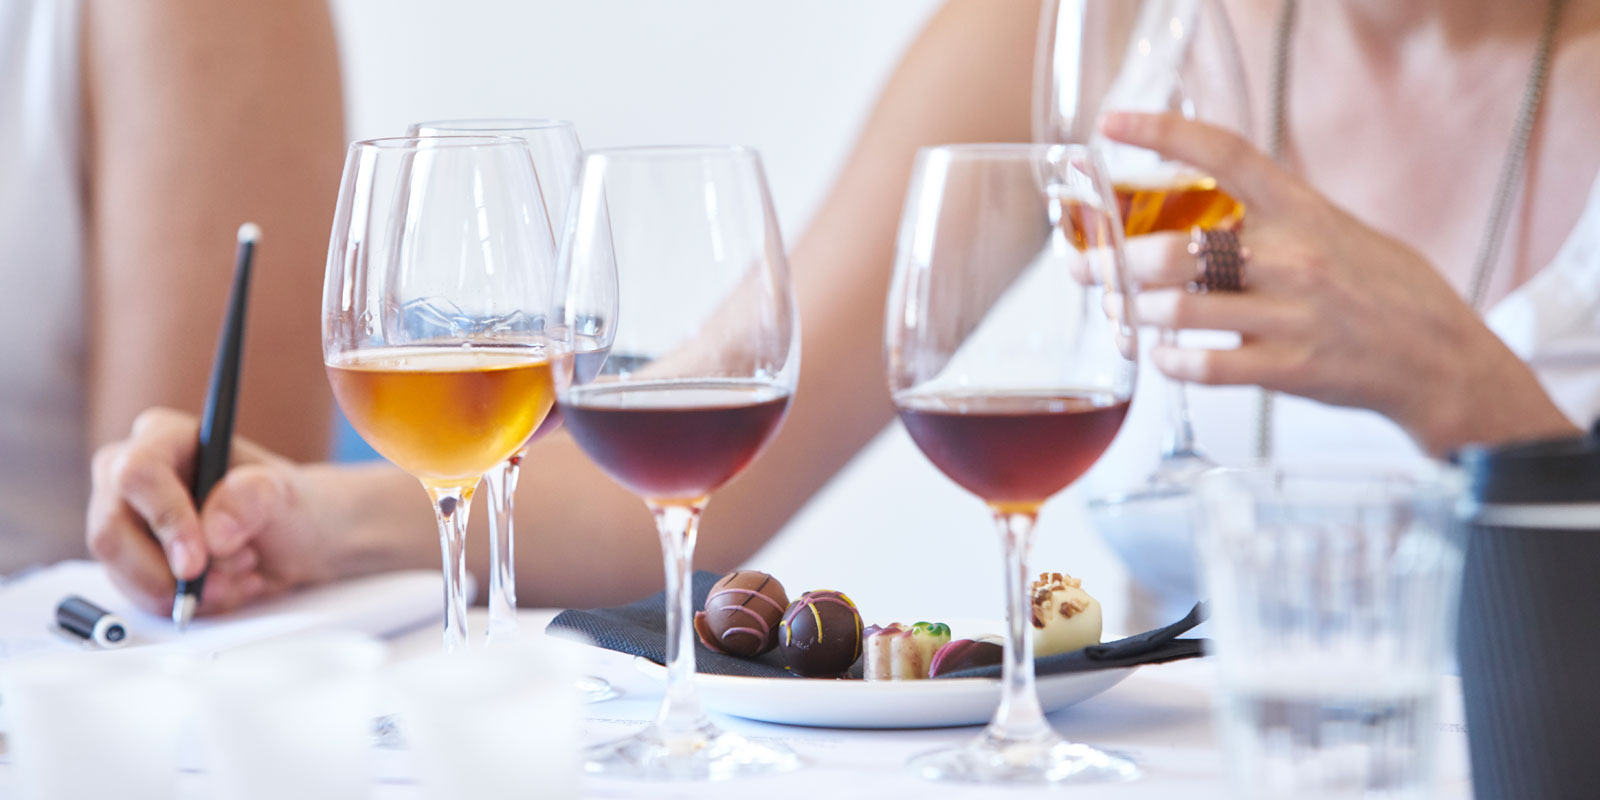 Chocolate and Madeira Wine Pairing